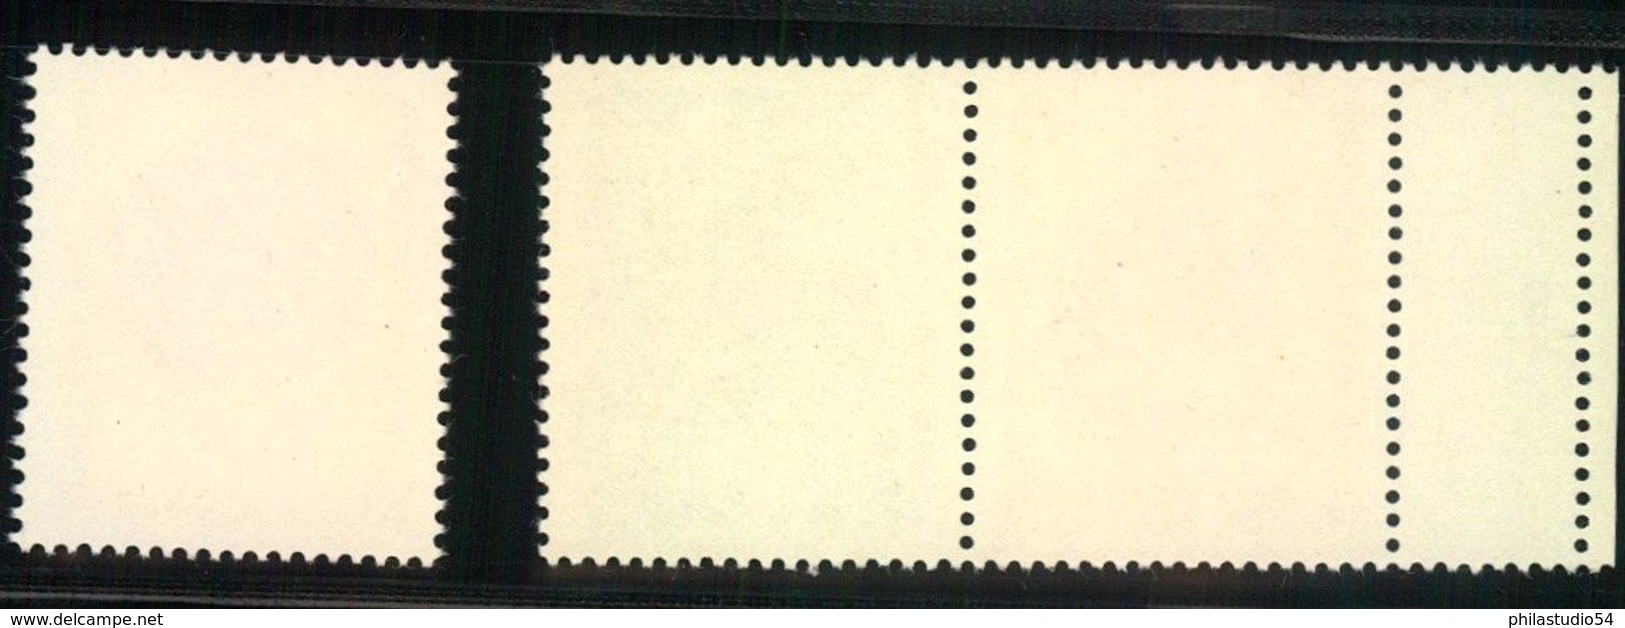 1969, Lausitzer Volkskunst, Zdr 10 Und 50 Pfg. Postfrisch Mit Leefeld Links Und 20 Pfg.Einzelmarke - Nuevos